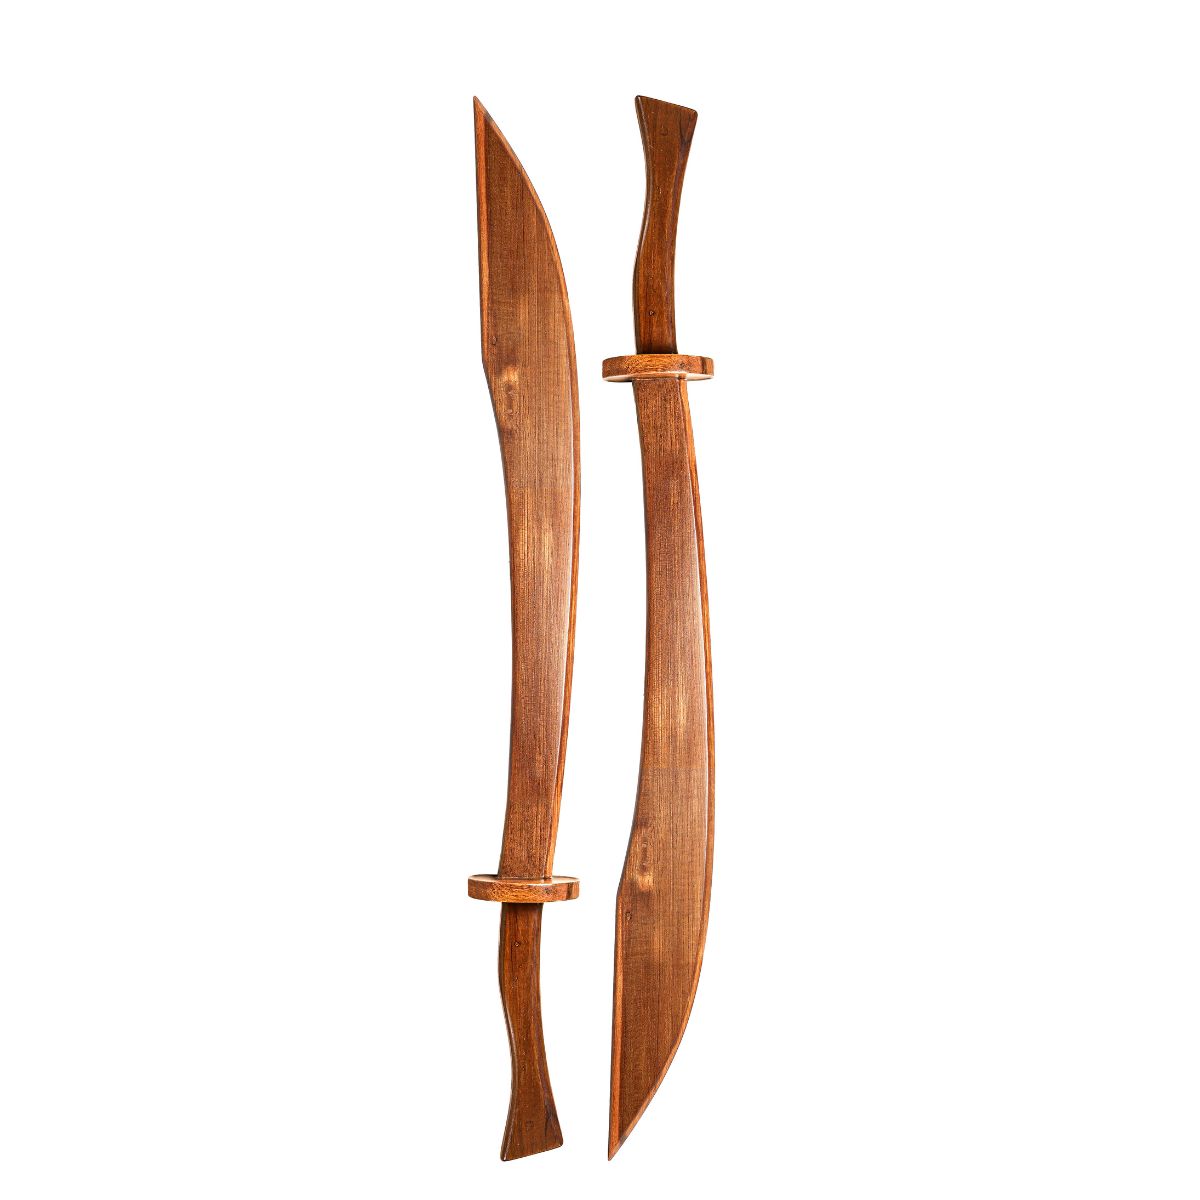 Wushu Wooden Practice Sword - Type C 5